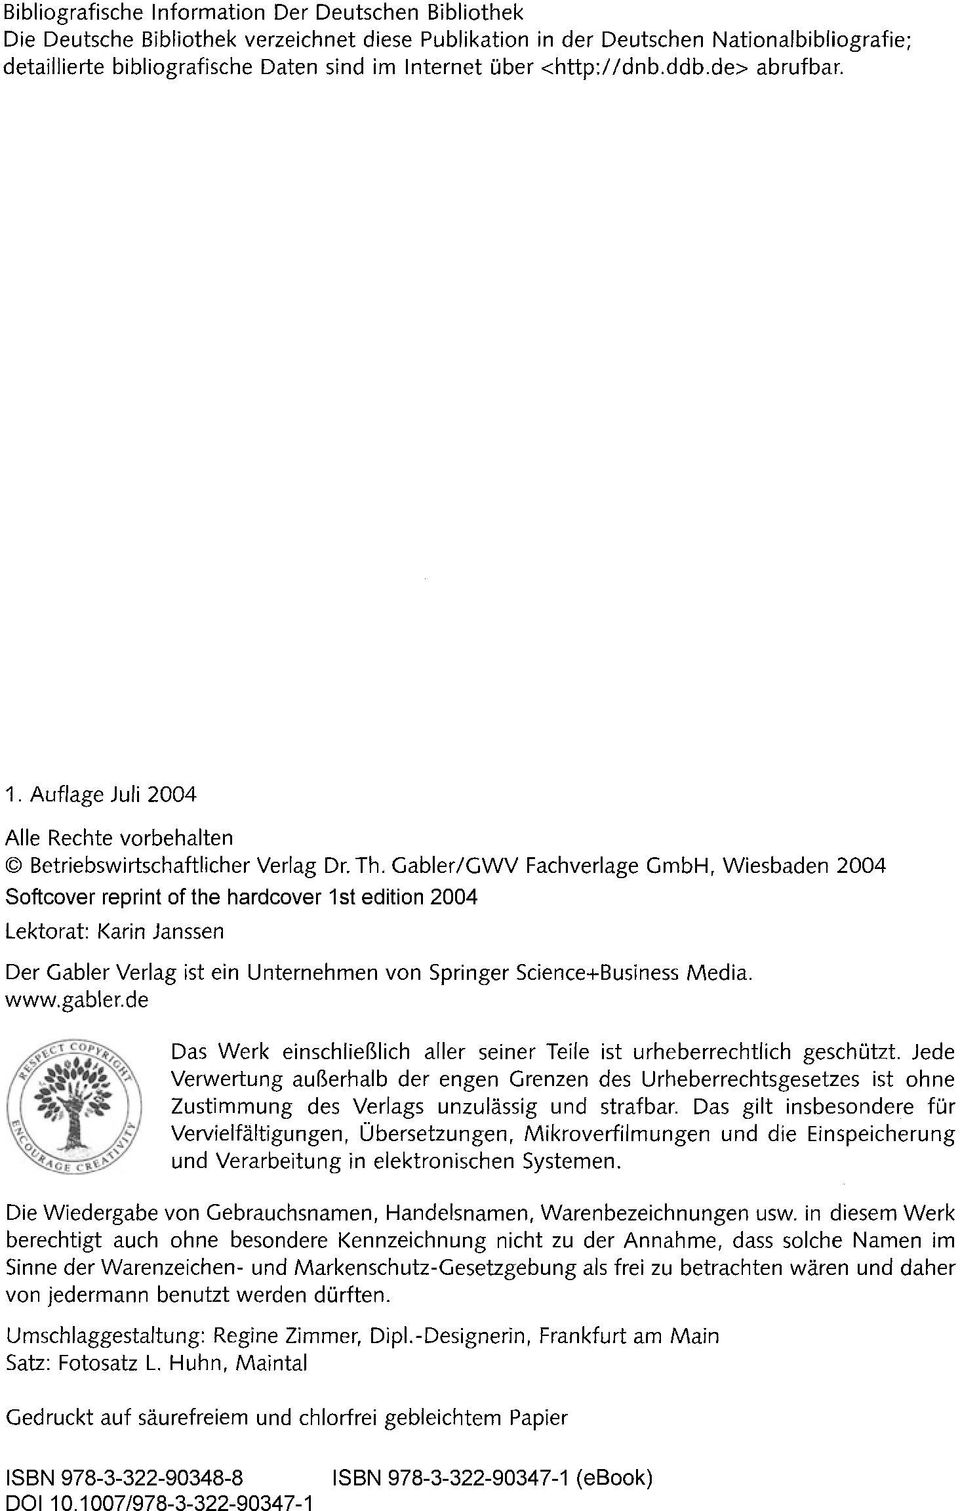 Gabler/GWV Fachverlage GmbH, Wiesbaden 2004 Softcover reprint of the hardcover 1 st edition 2004 Lektorat: Karin Janssen Der Gabler Verlag ist ein Unternehmen von Springer Science+Business Media. www.